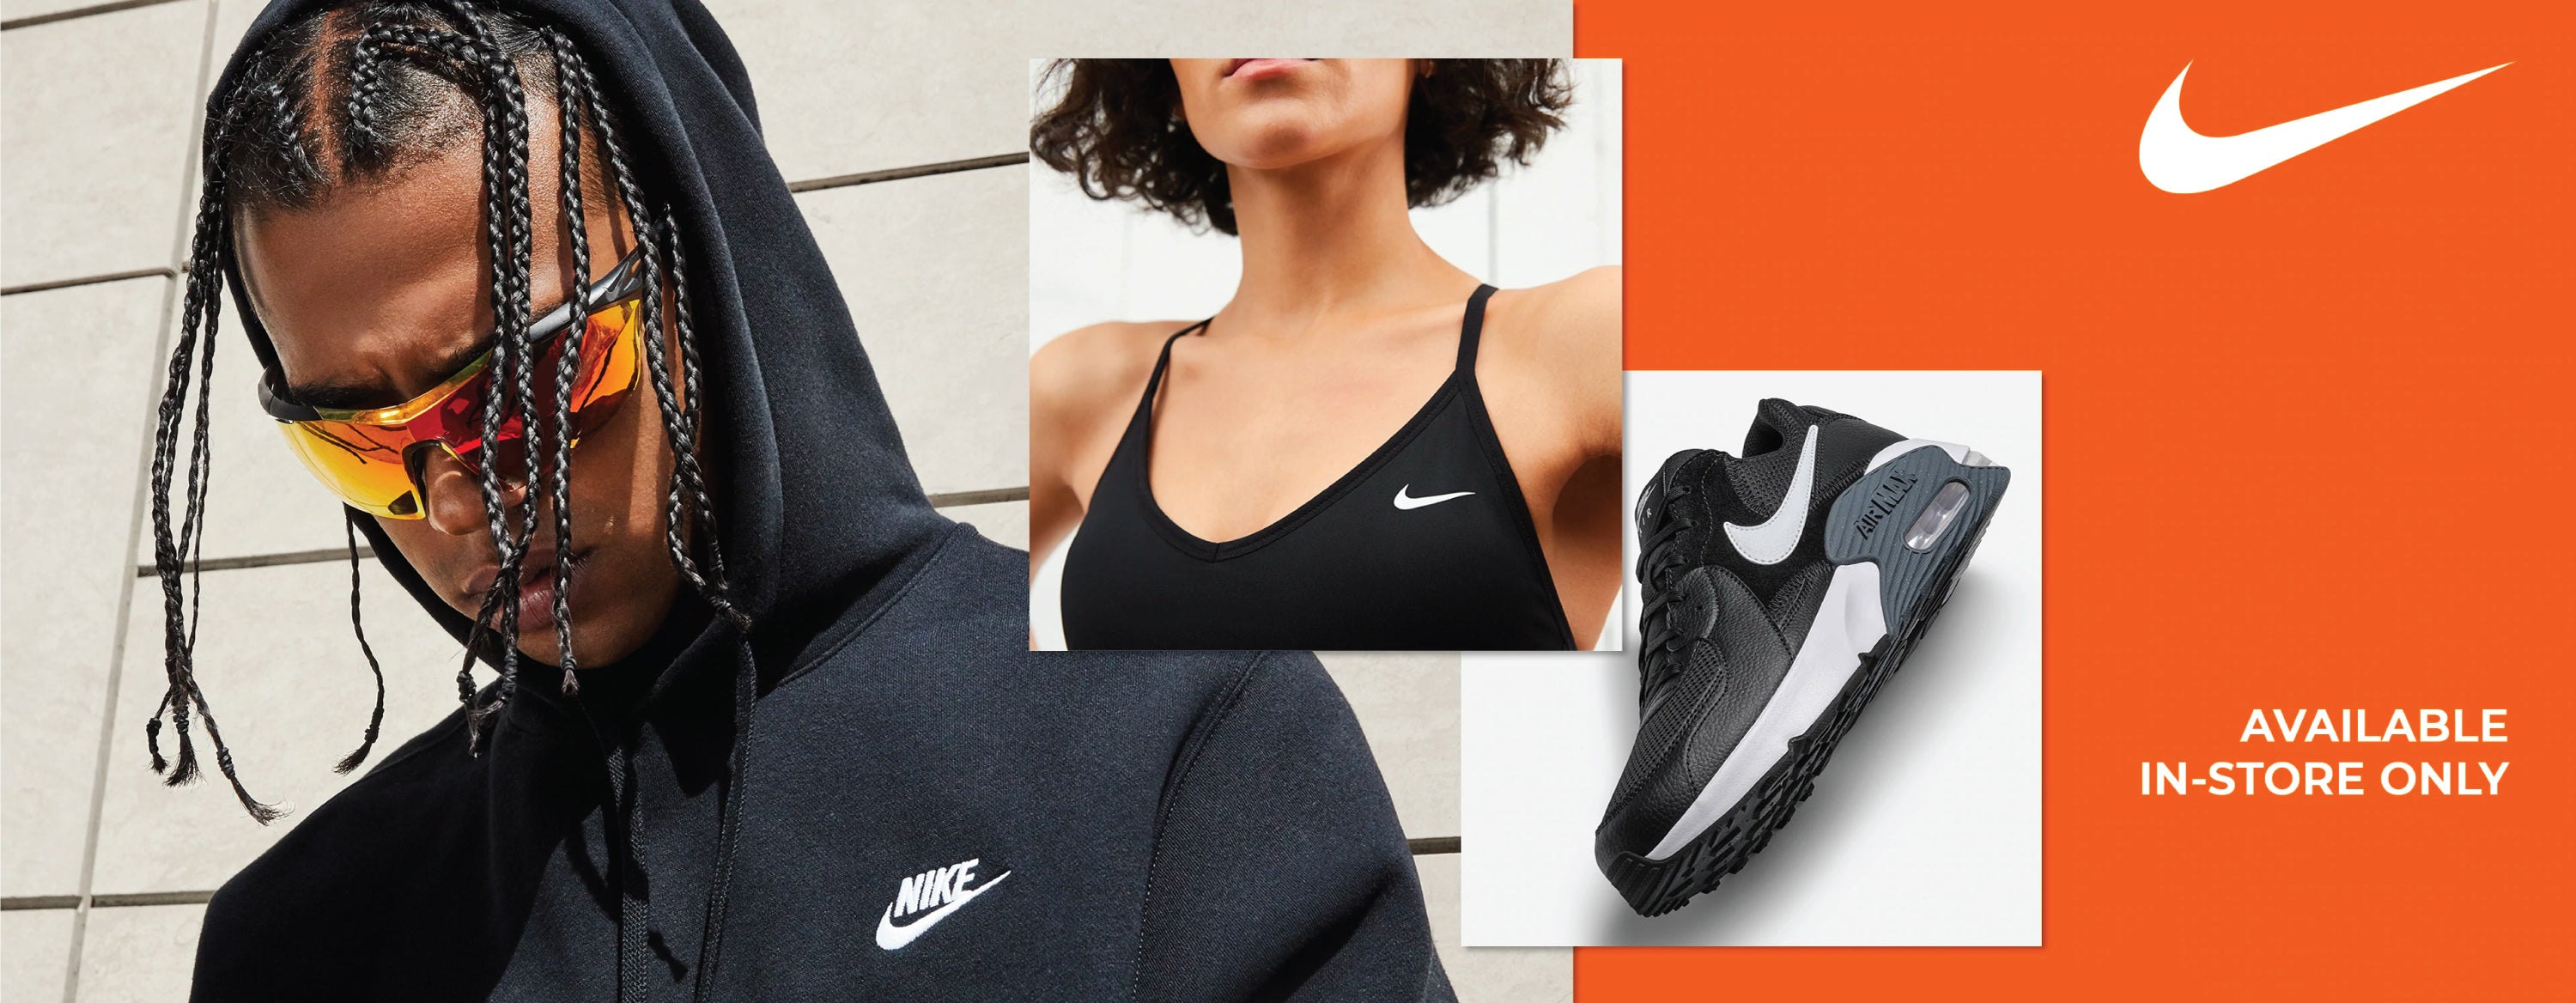 Nike Apparel, Footwear & Accessories